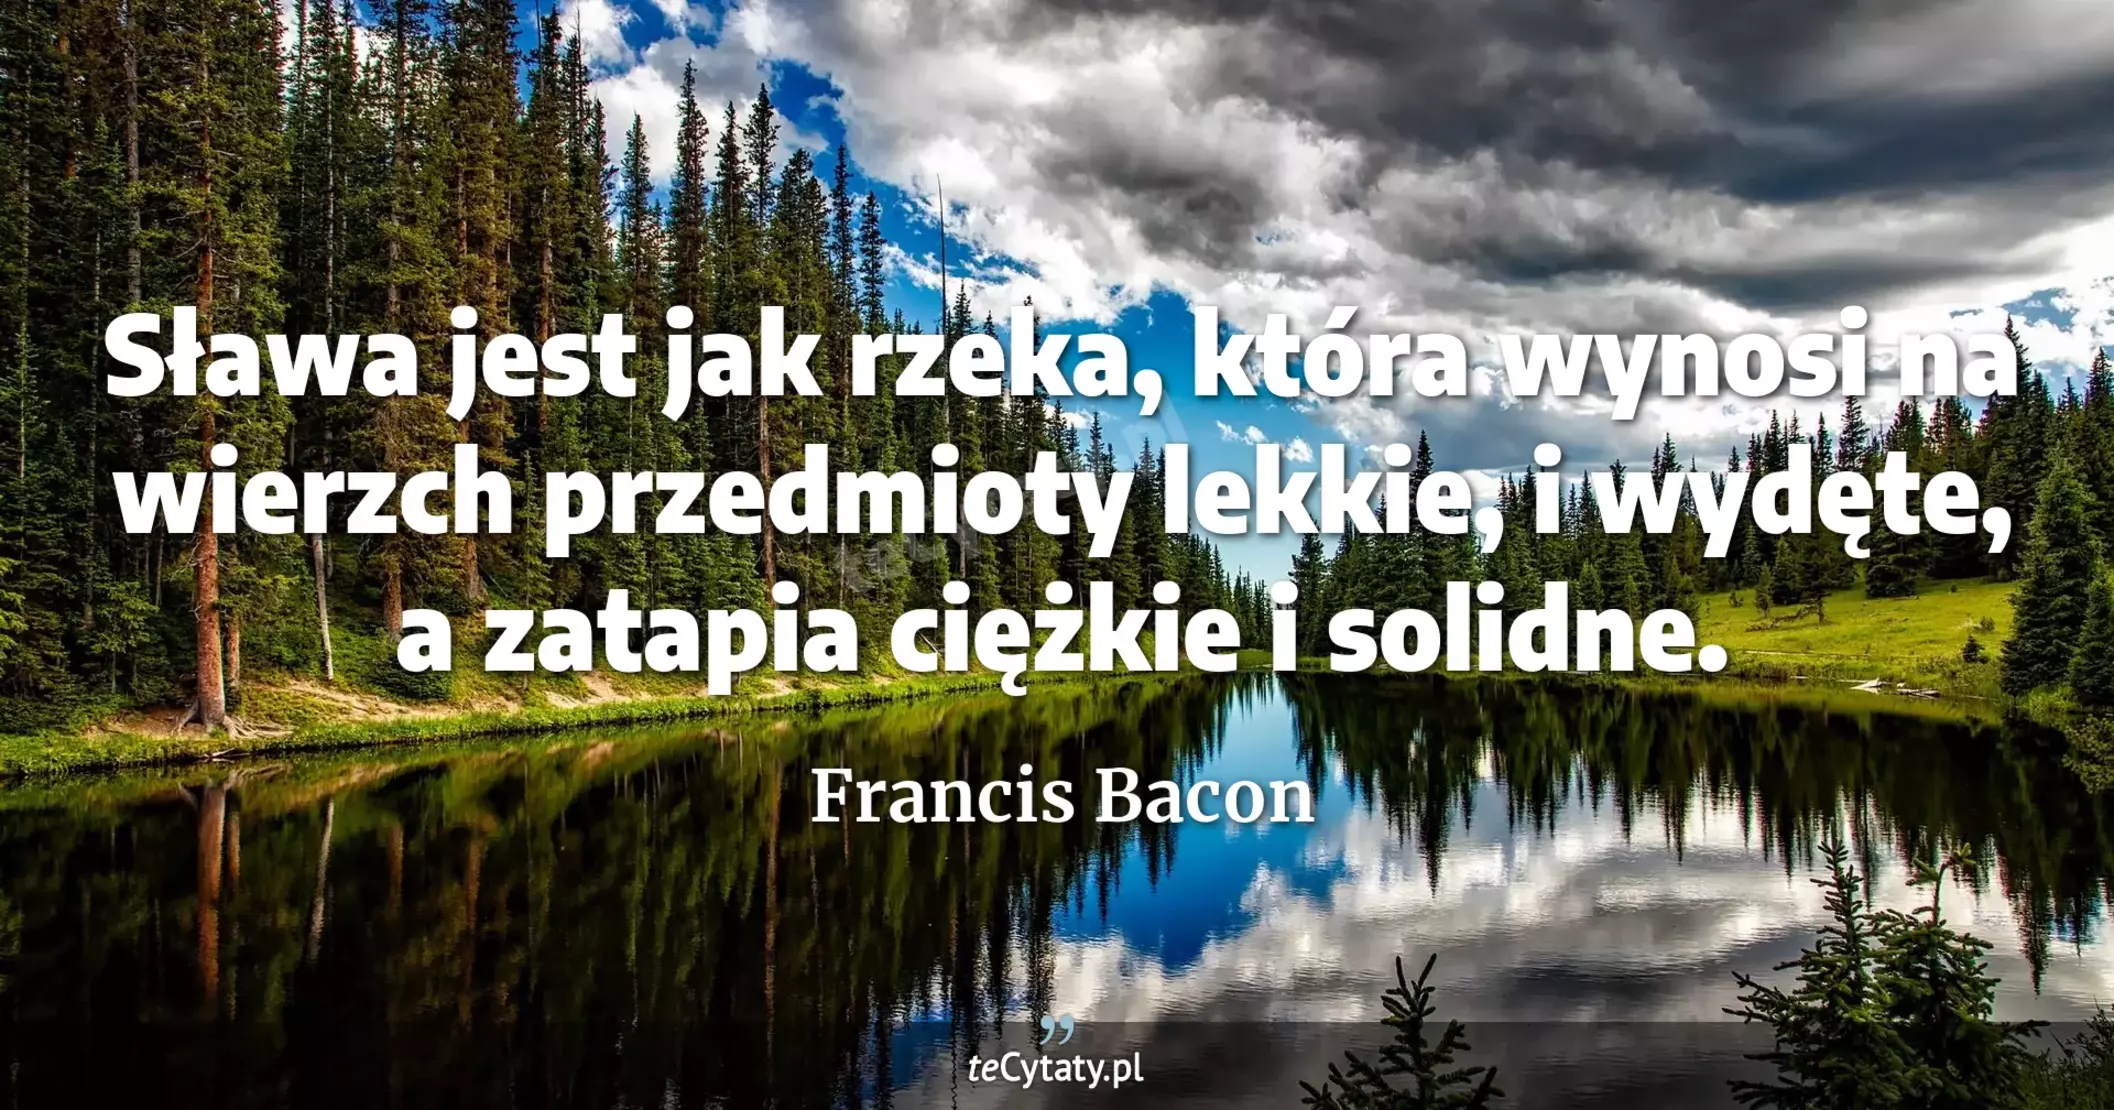 Sława jest jak rzeka, która wynosi na wierzch przedmioty lekkie, i wydęte, a zatapia ciężkie i solidne. - Francis Bacon